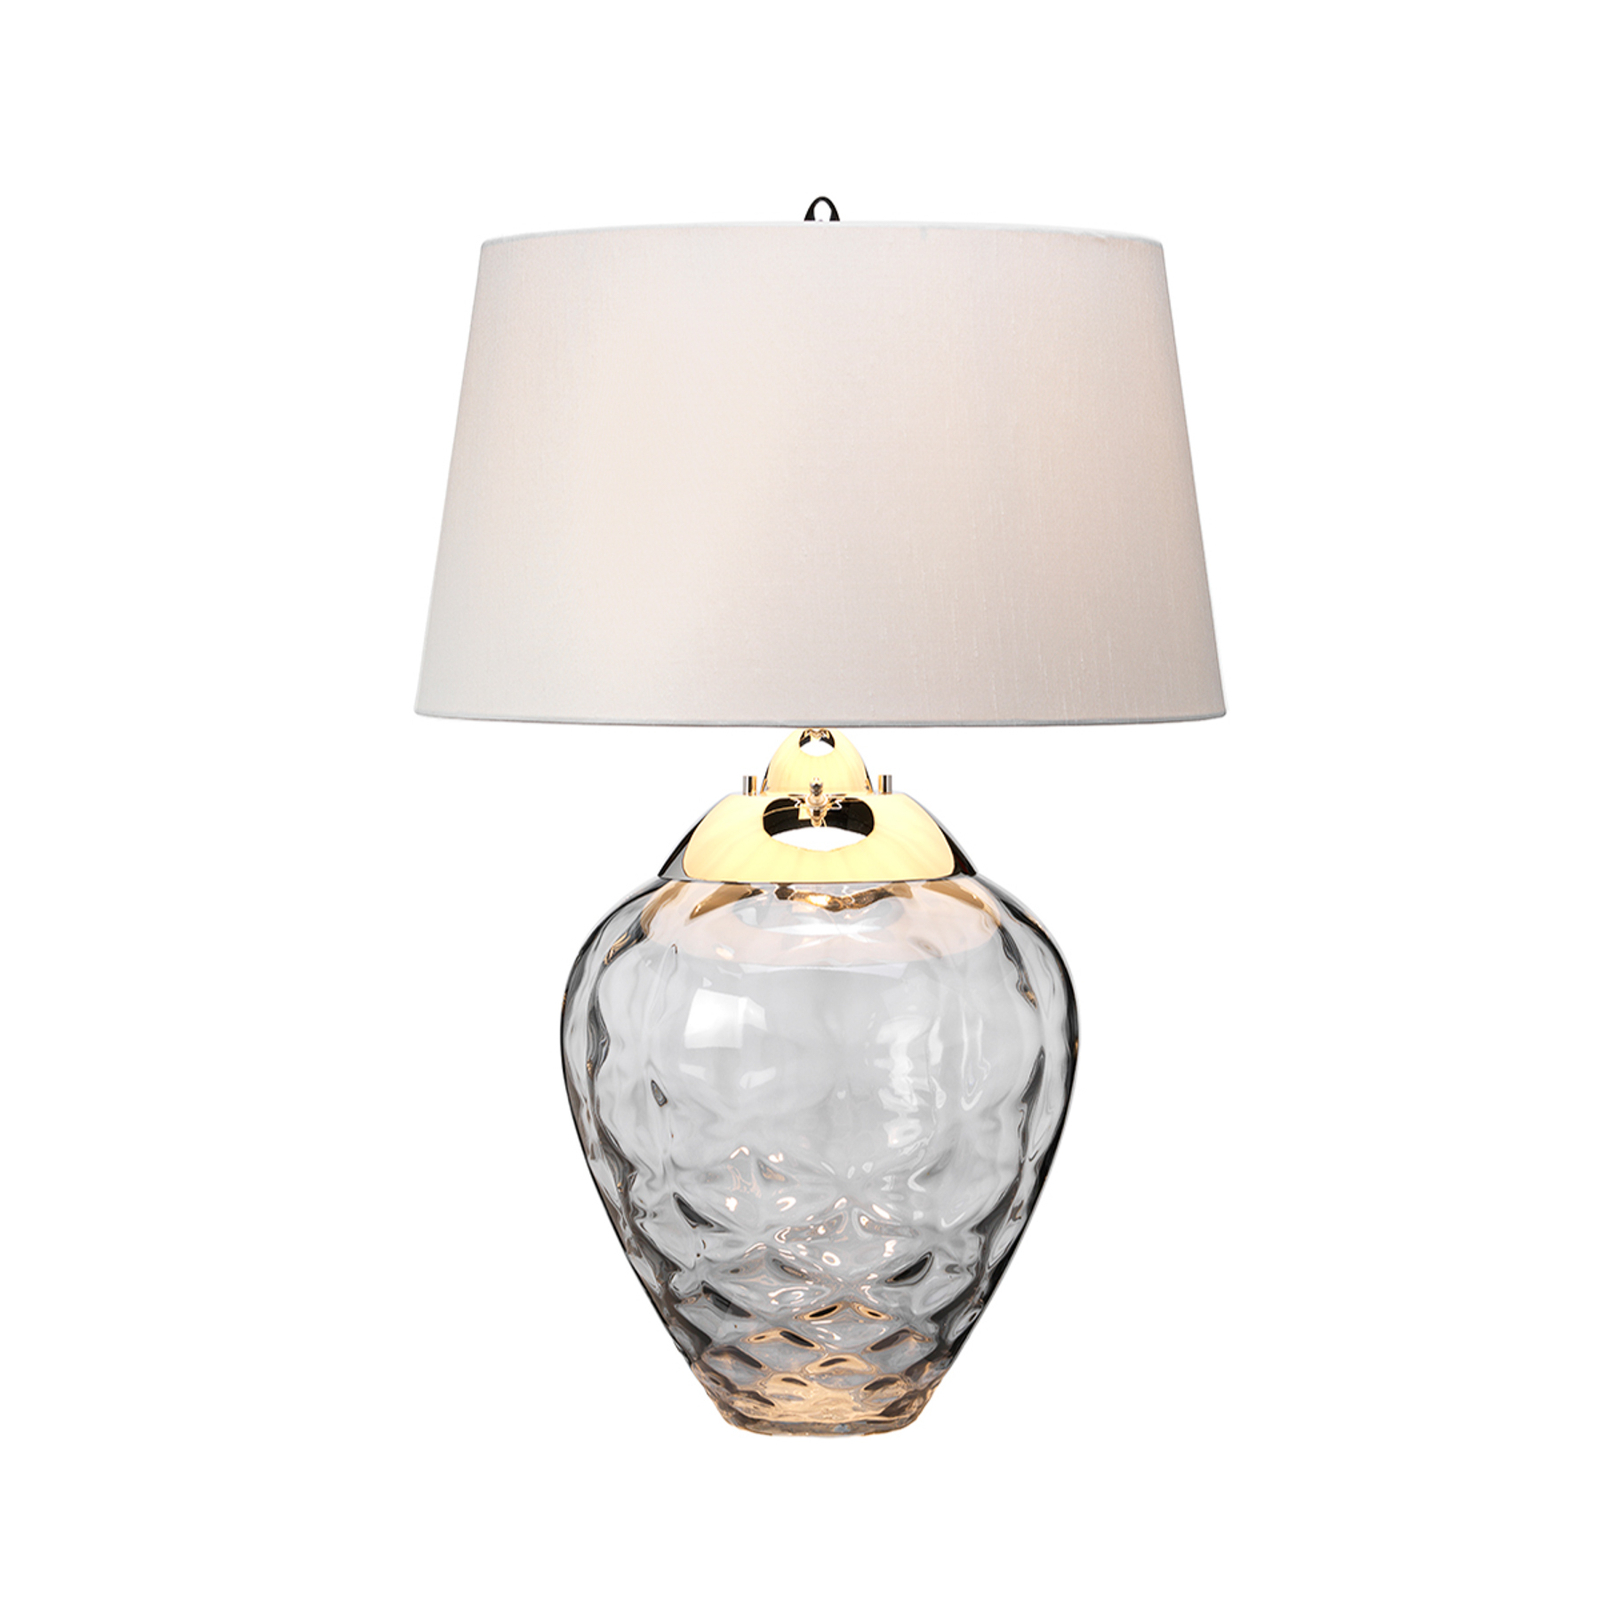 Samara tafellamp, Ø 45,7 cm, grijs, stof, glas, 2-lamps